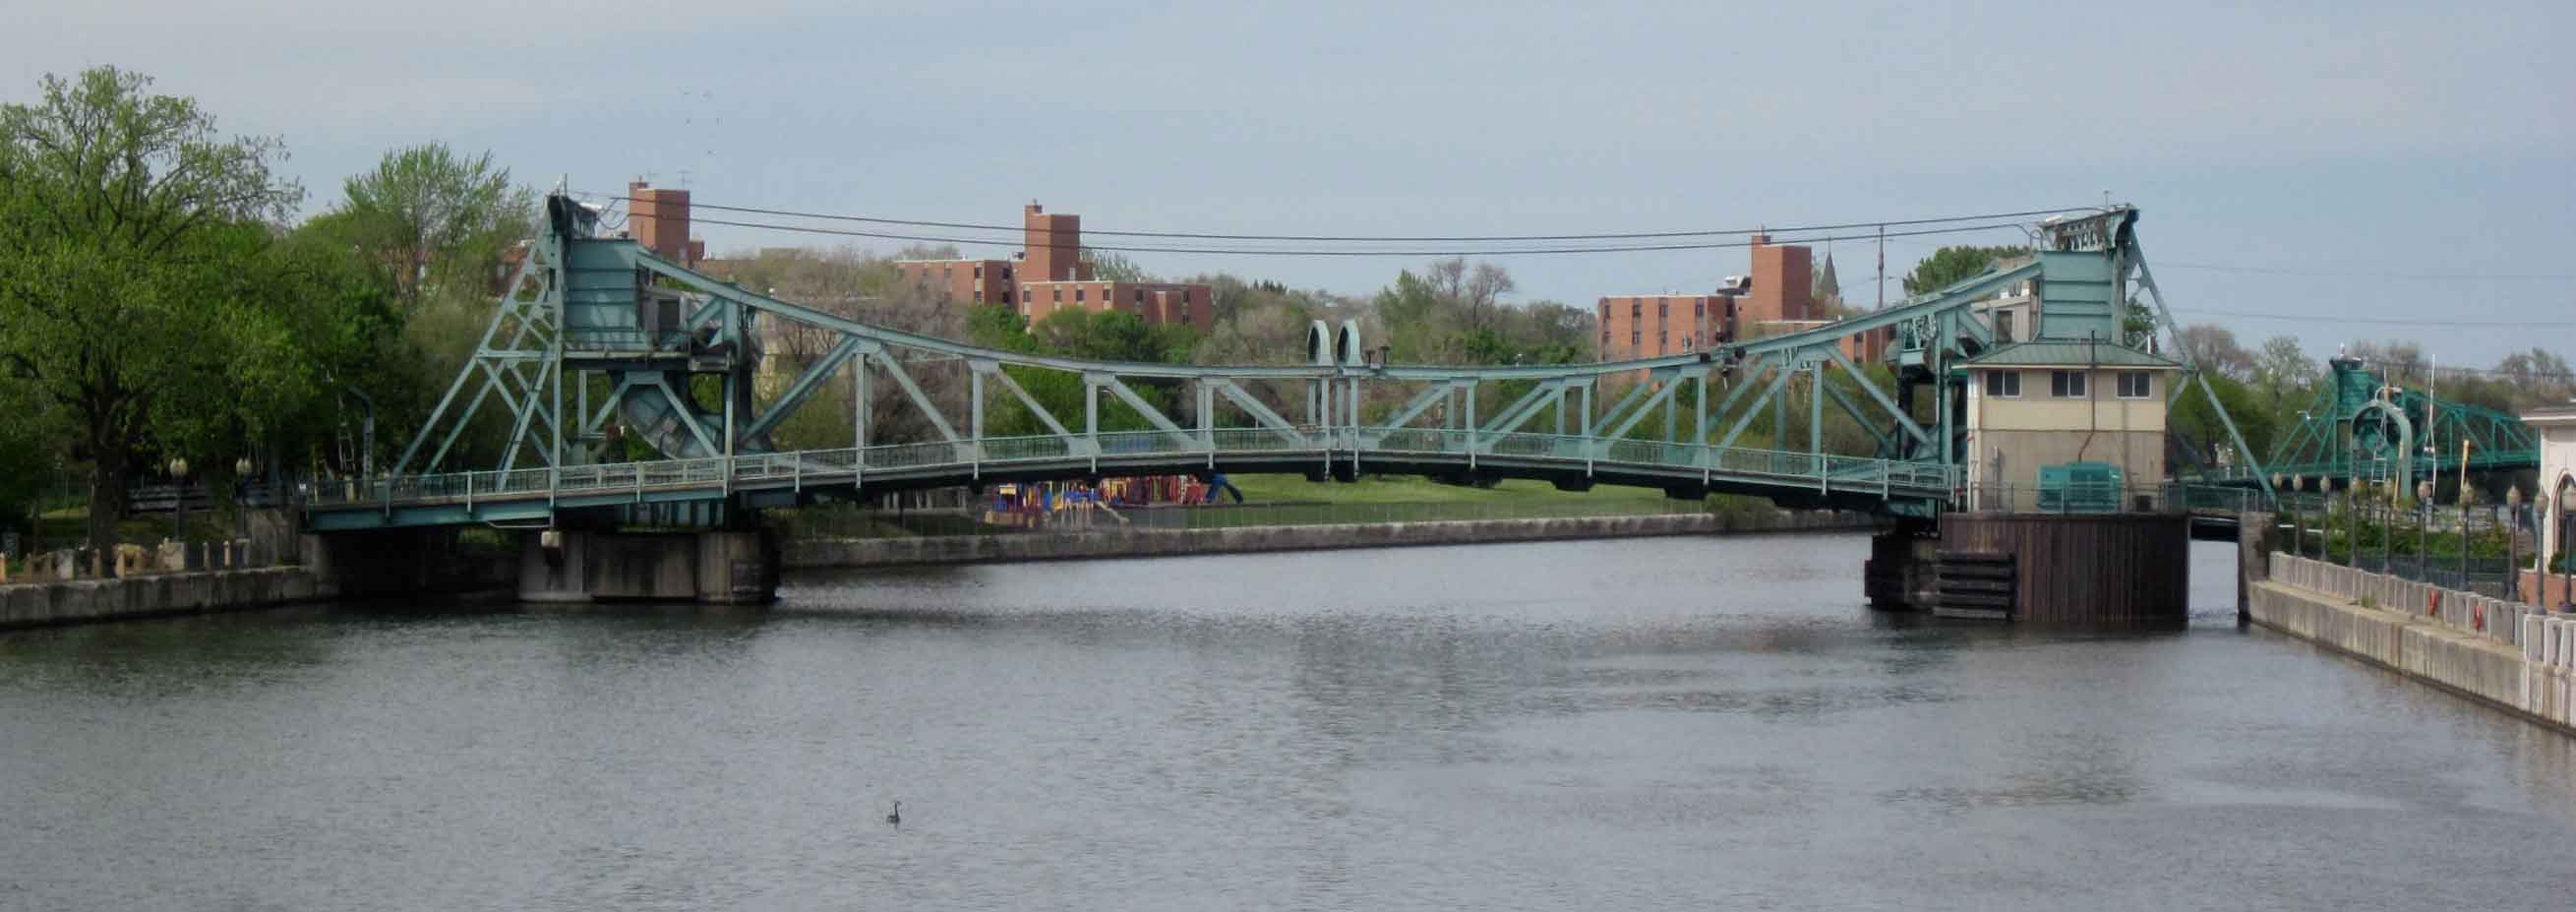 Cass Street Bridge in Joliet Illinois